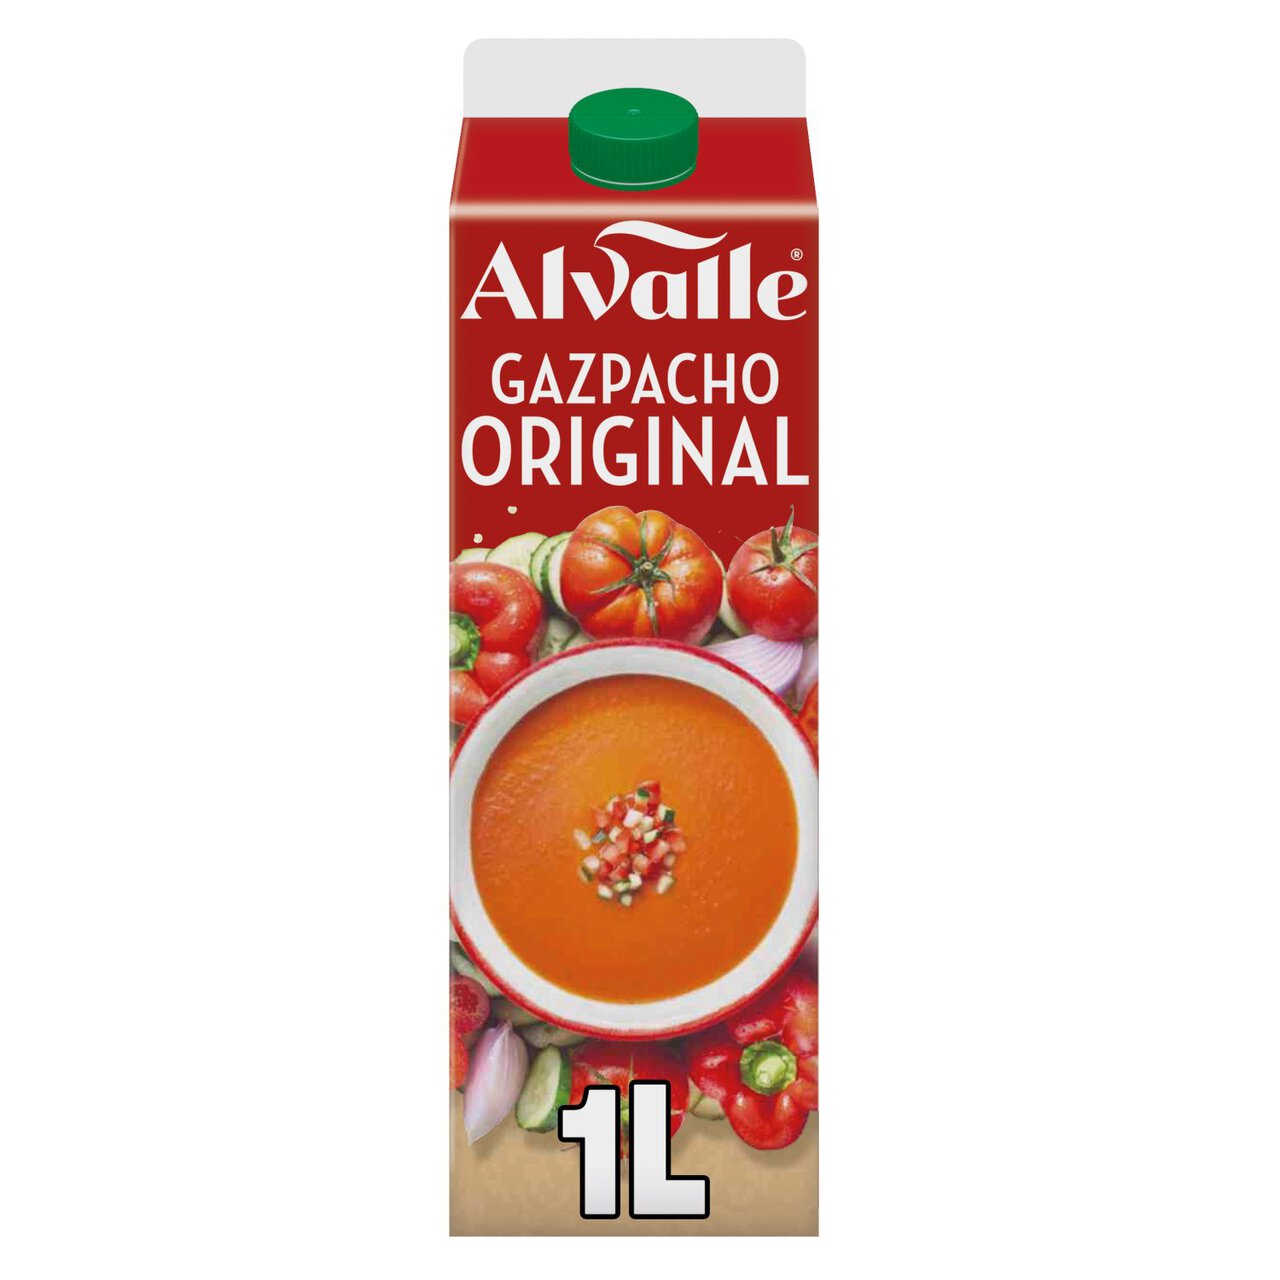 Alvalle Spanish Gazpacho Original 1l